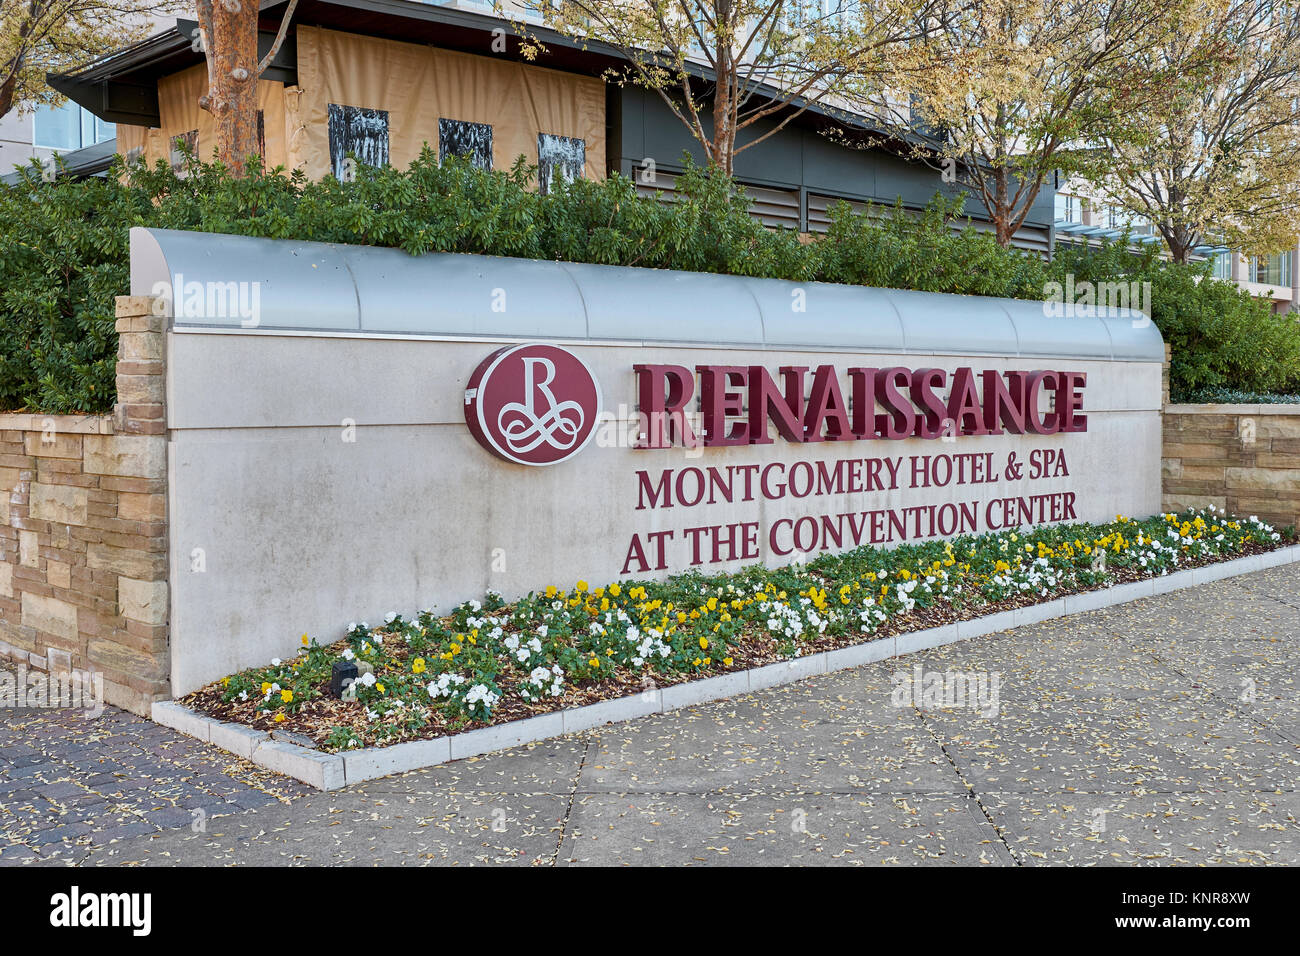 Panneau extérieur pour la Renaissance Montgomery Hotel & Spa at the Convention Center à Montgomery, en Alabama, USA. Banque D'Images